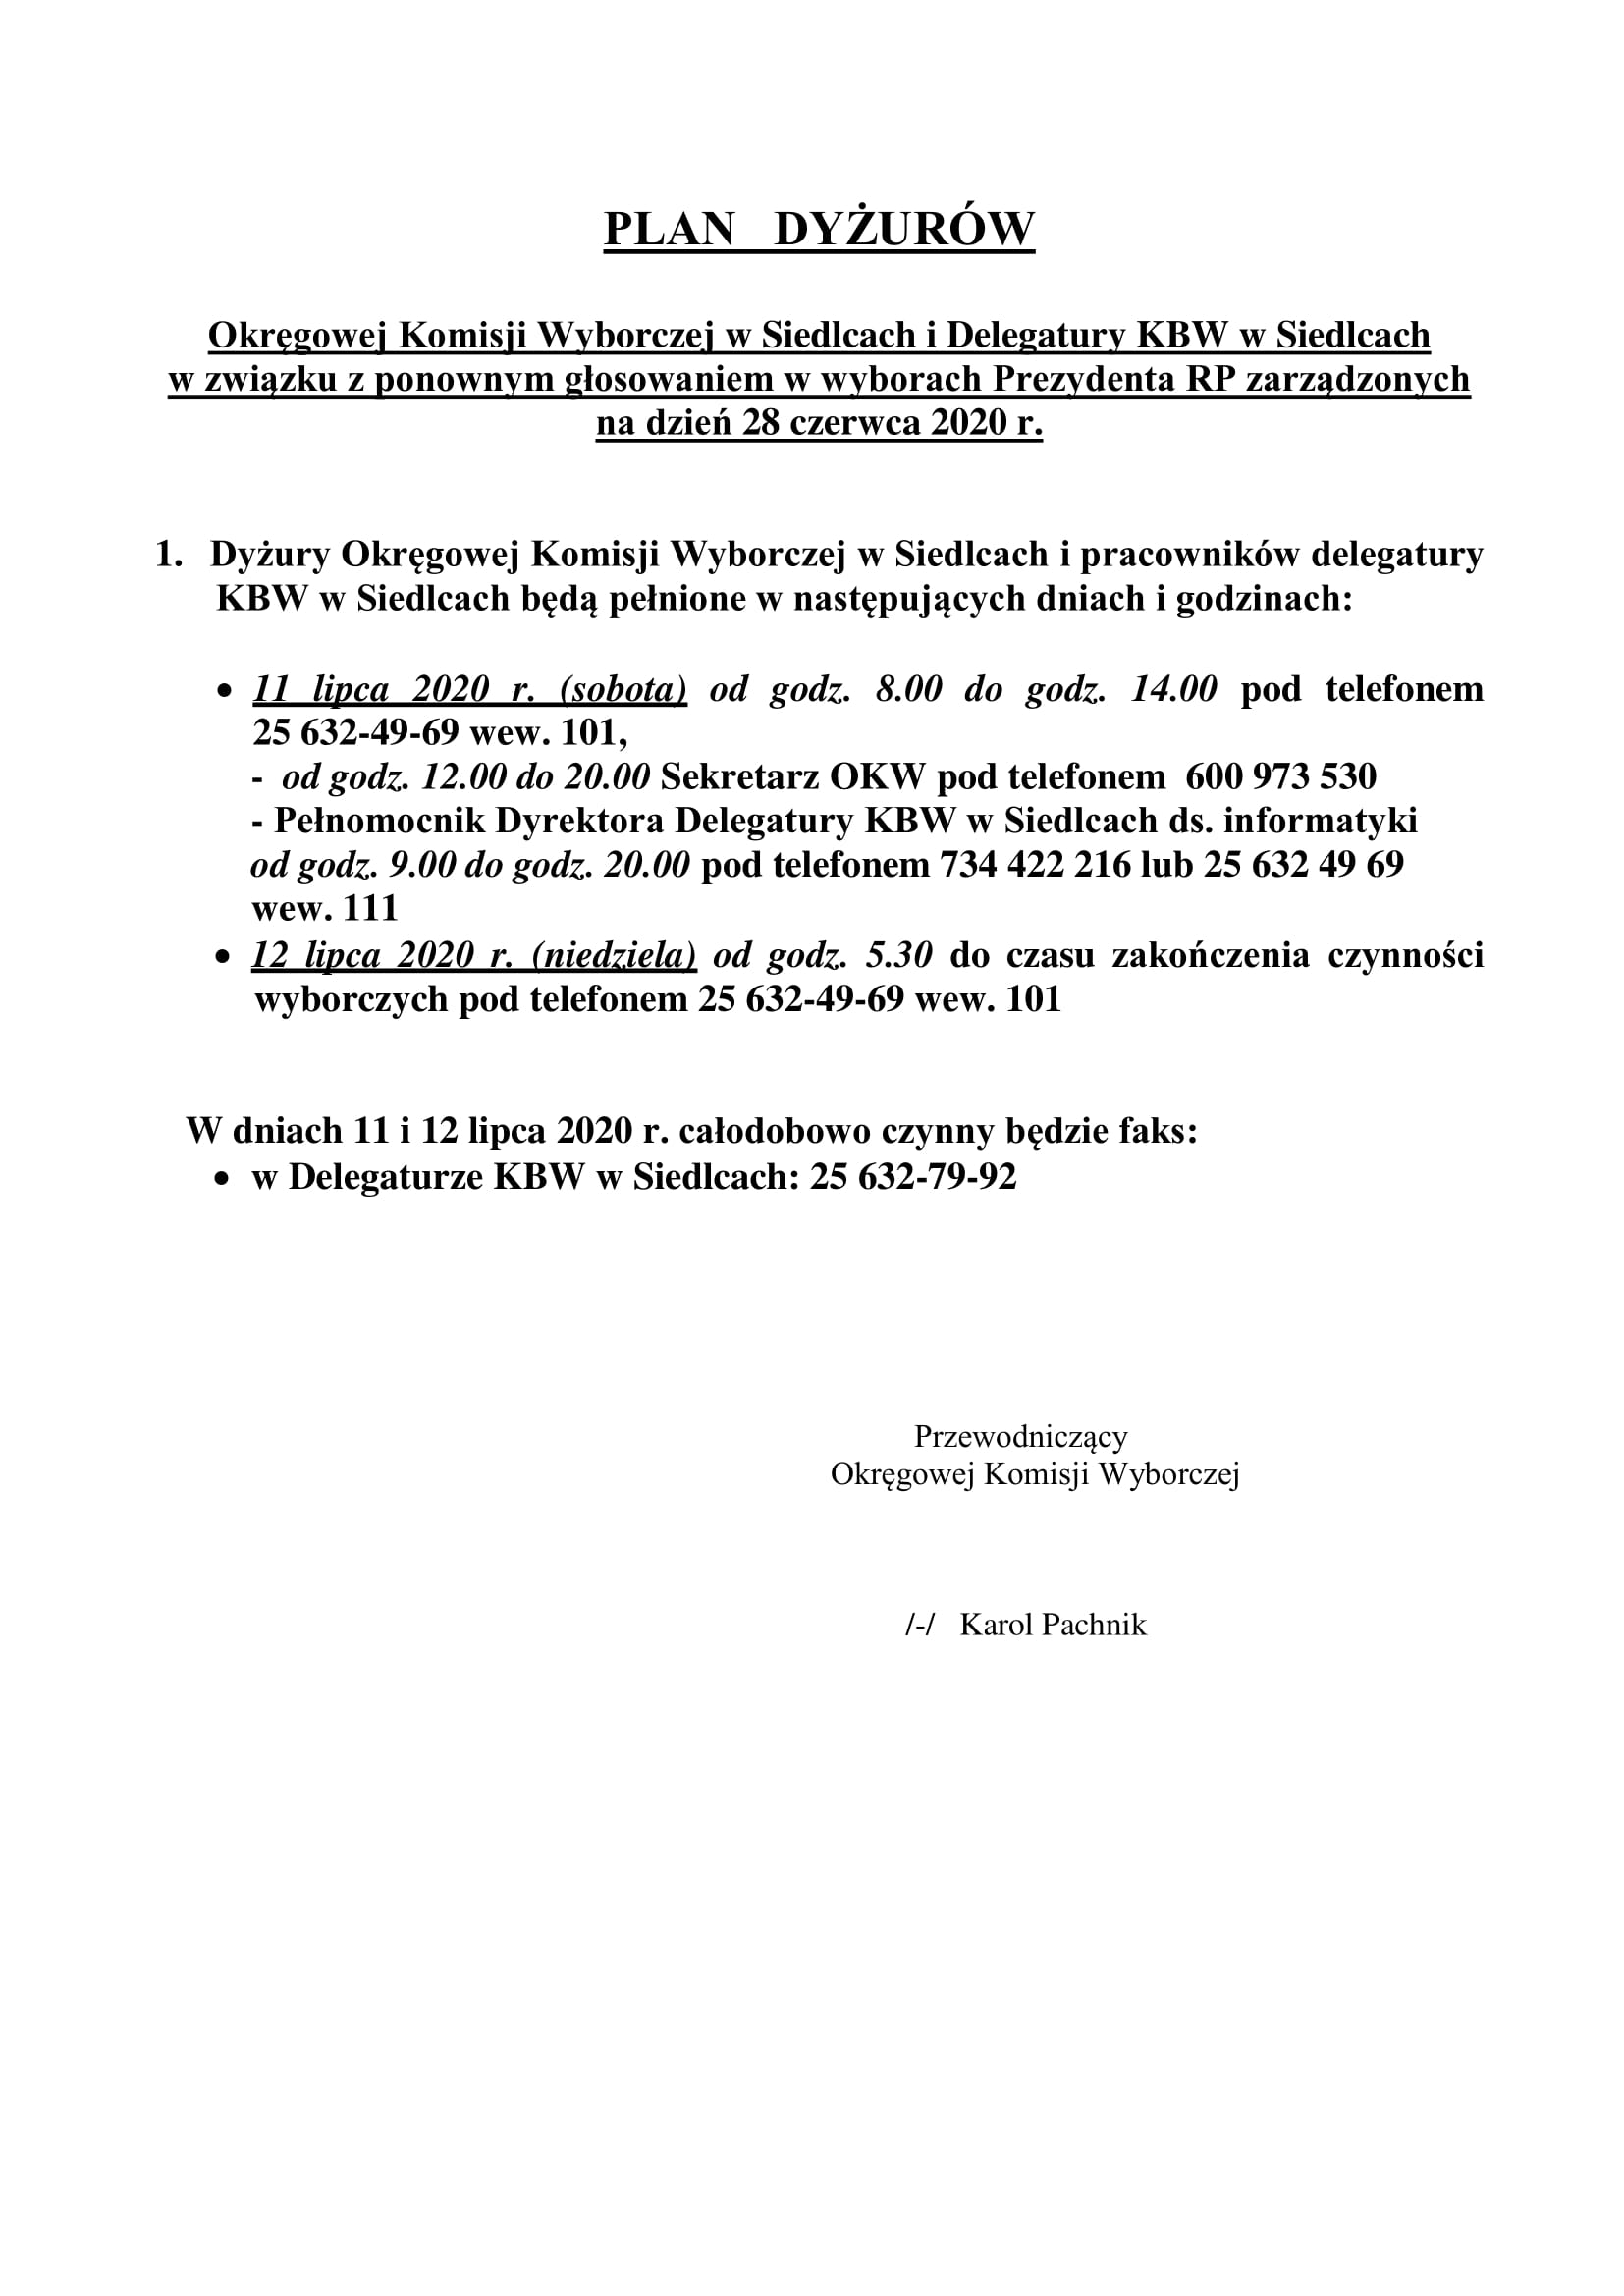 Plan Dyżurów Okręgowej Komisji Wyborczej w Siedlcach i Delegatury KBW w Siedlcach w związku z ponownym głosowaniem w Wyborach Prezydenta RP zarządzonych na dzień 28 czerwca 2020 roku